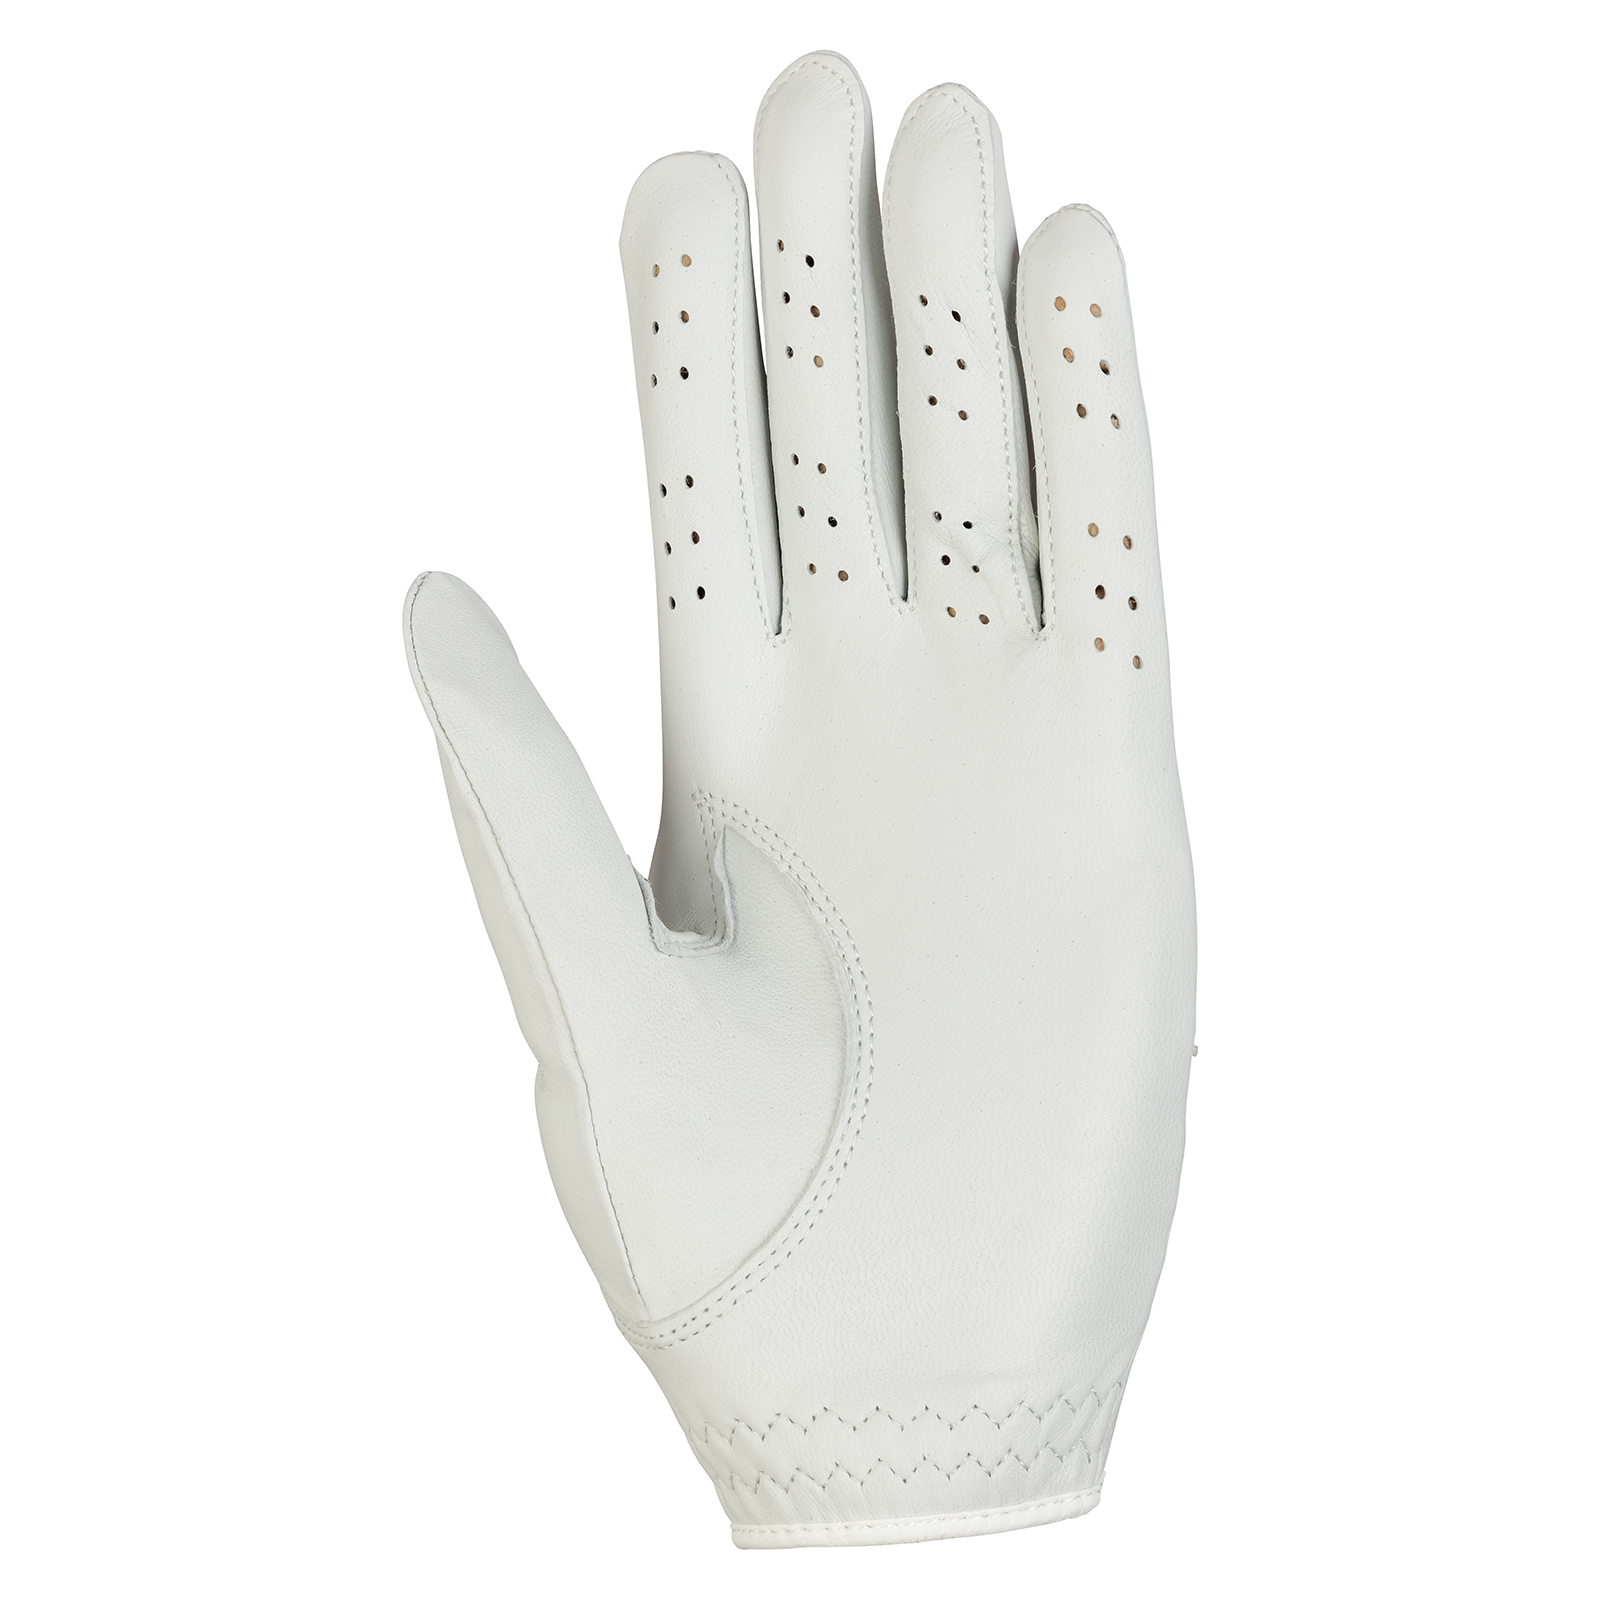 Ladies Cabretta Leather Golf Glove (left)